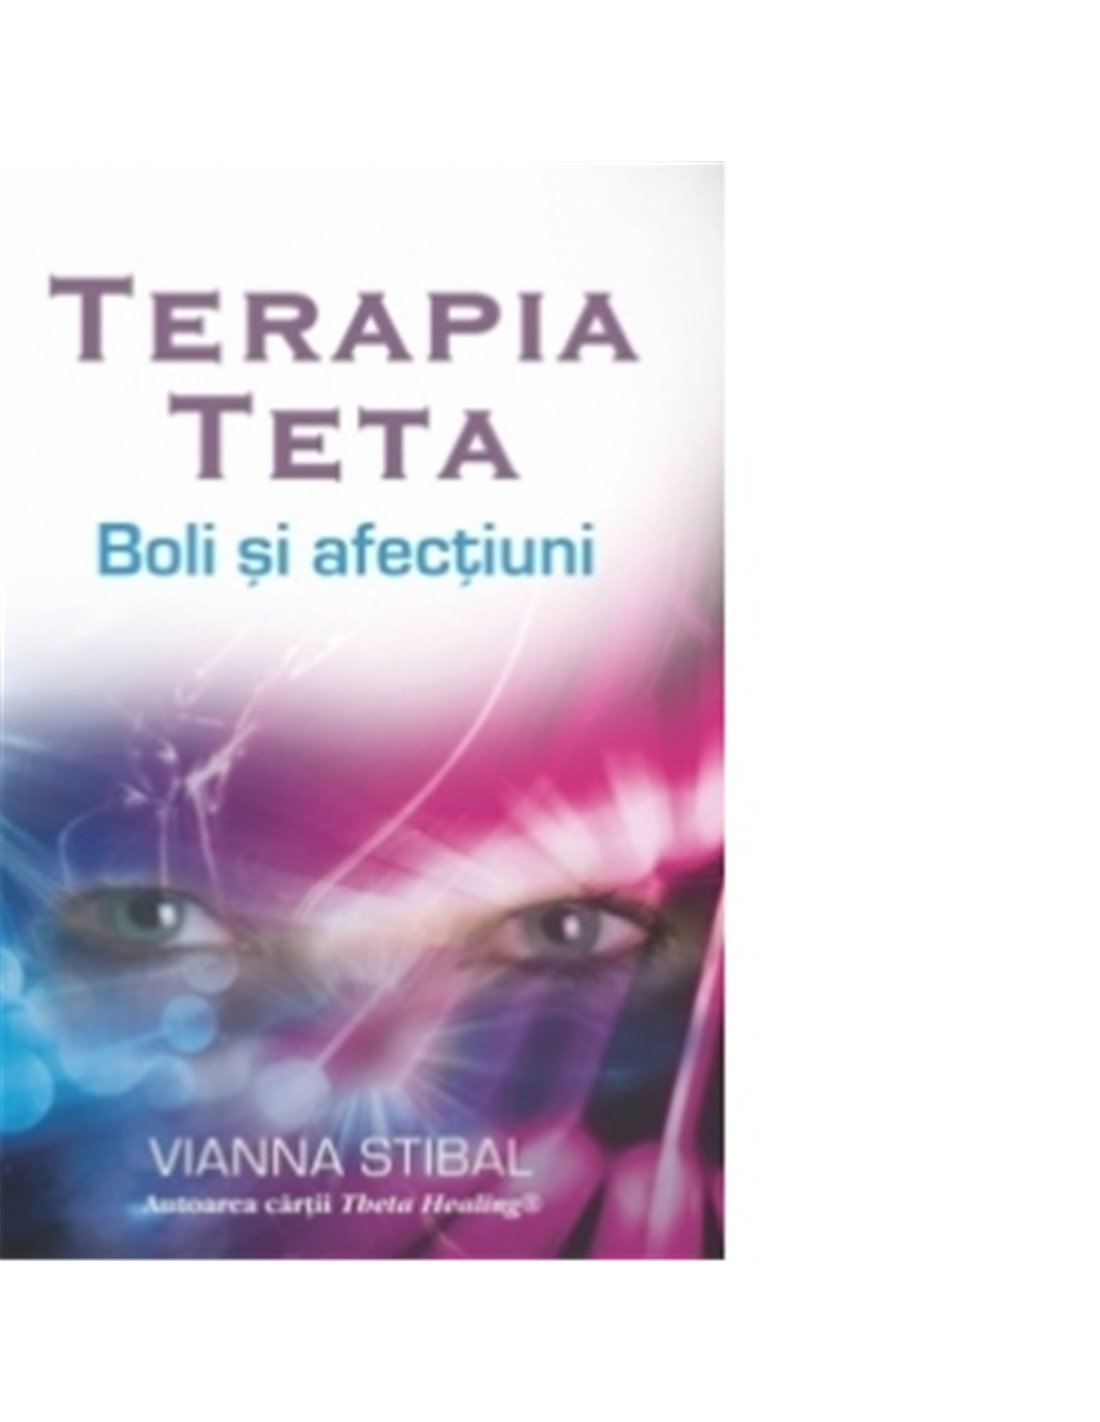 Terapia Teta – Boli şi afecţiuni - Vianna Stibal | Editura Adevar Divin